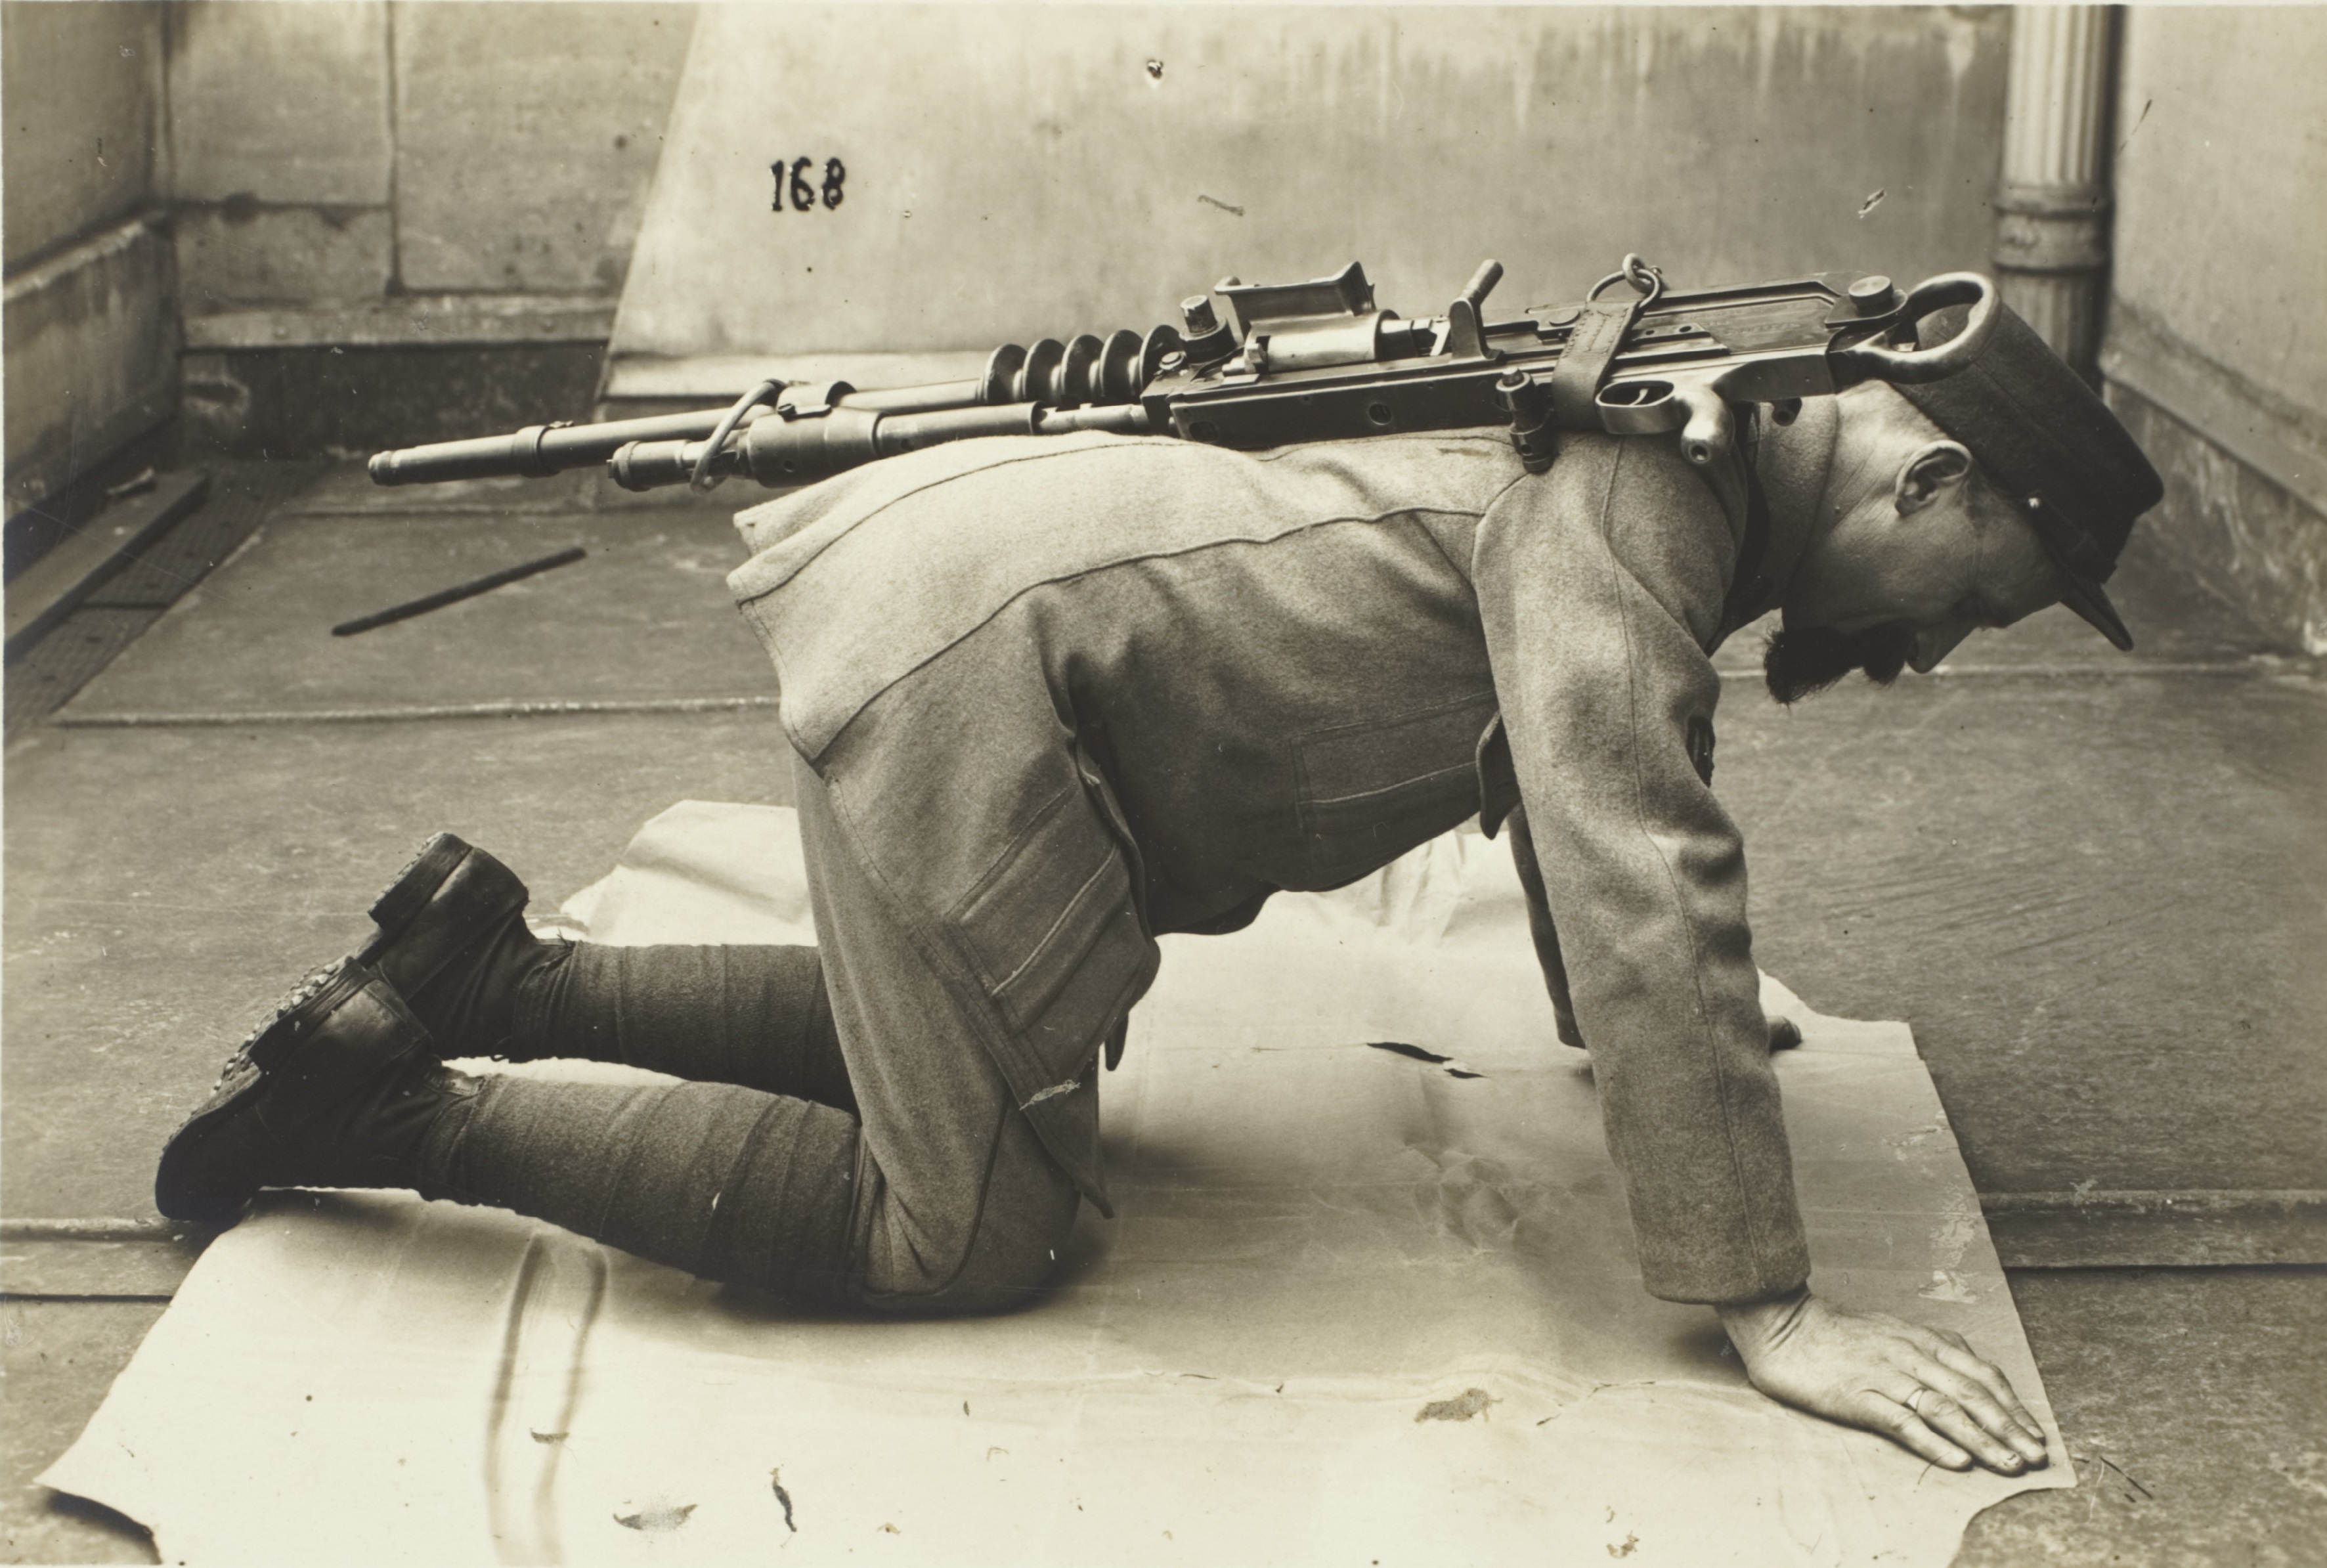 Sangle pour le transport du matériel des mitrailleuses du sous-lieutenant Tallet, 1917-1918, tirage gélatino-argentique, Archives nationales (France), 398AP/39